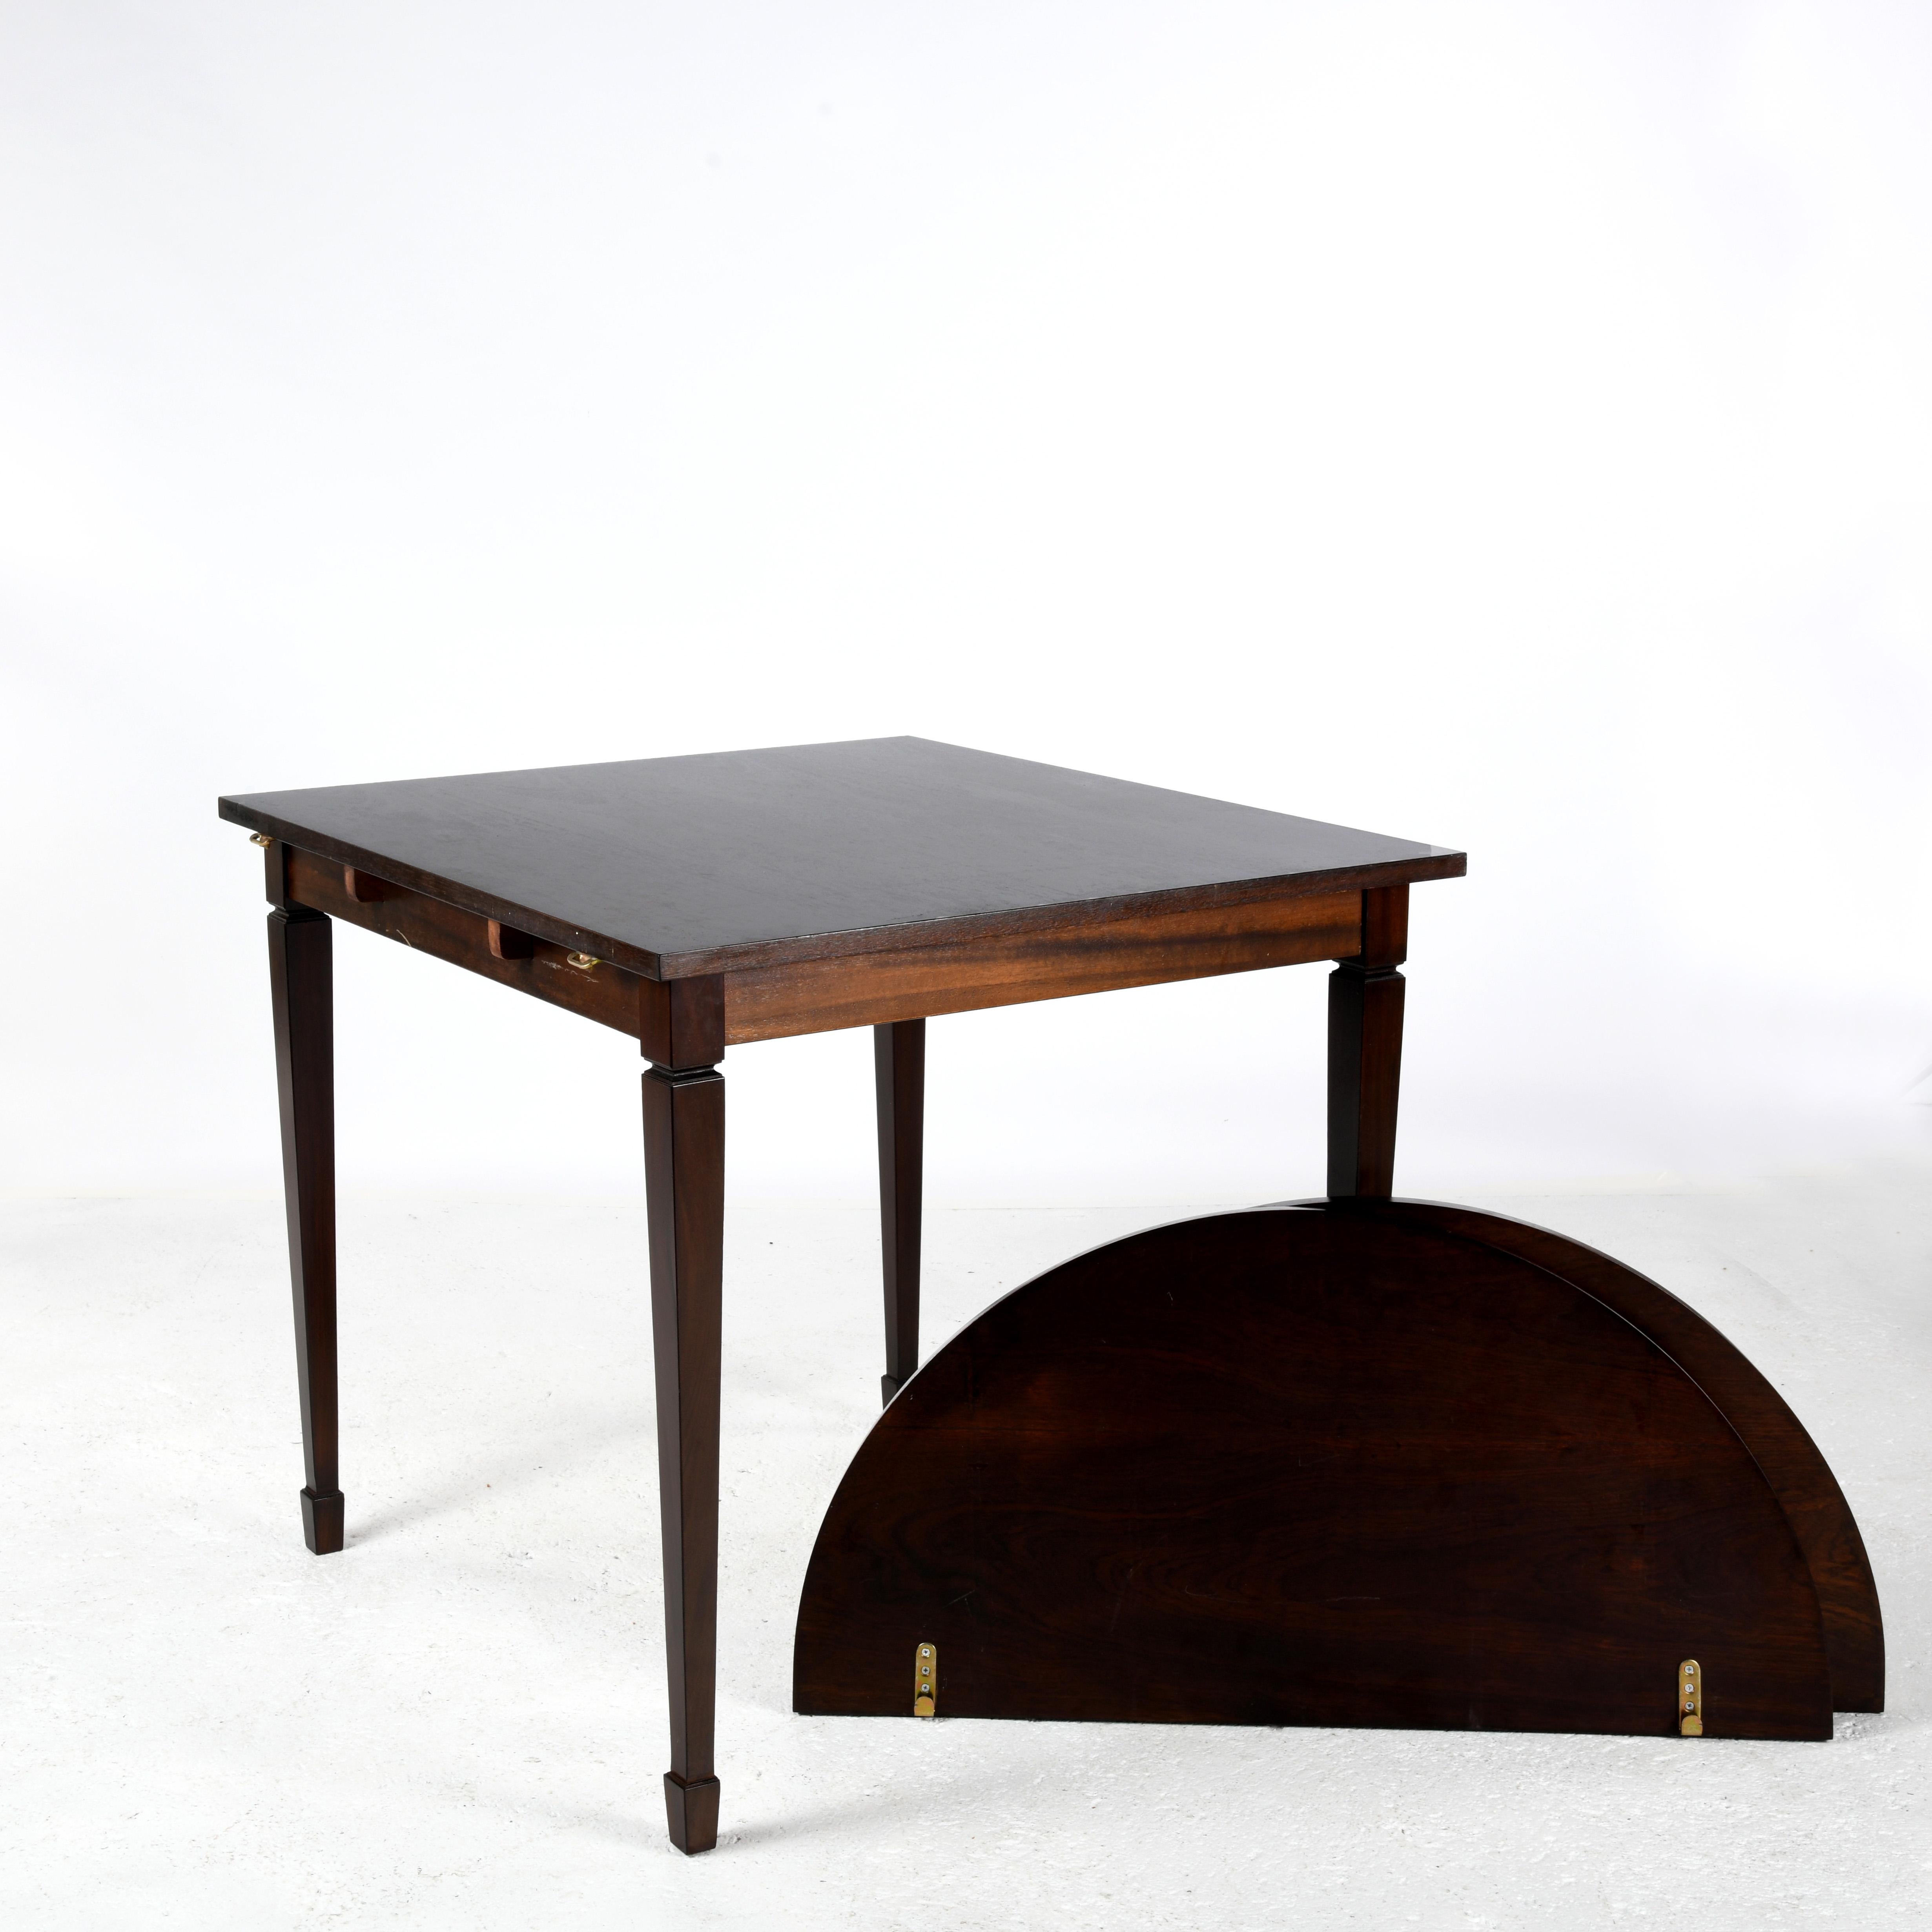 Bois Petite table carrée avec deux extensions arrondies formant une table ovale en vente